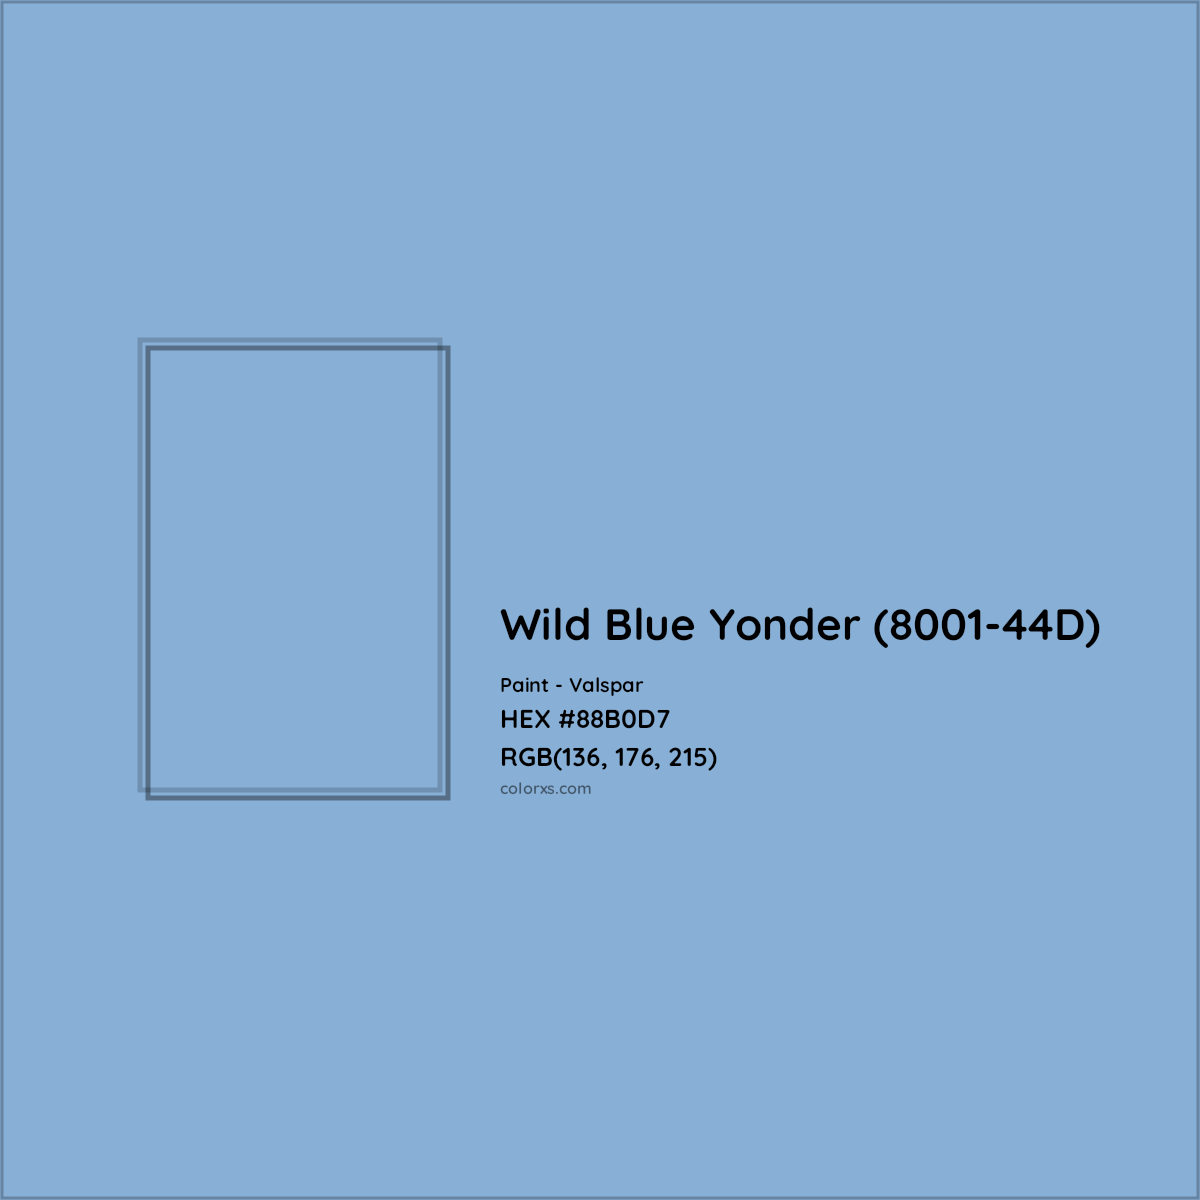 HEX #88B0D7 Wild Blue Yonder (8001-44D) Paint Valspar - Color Code